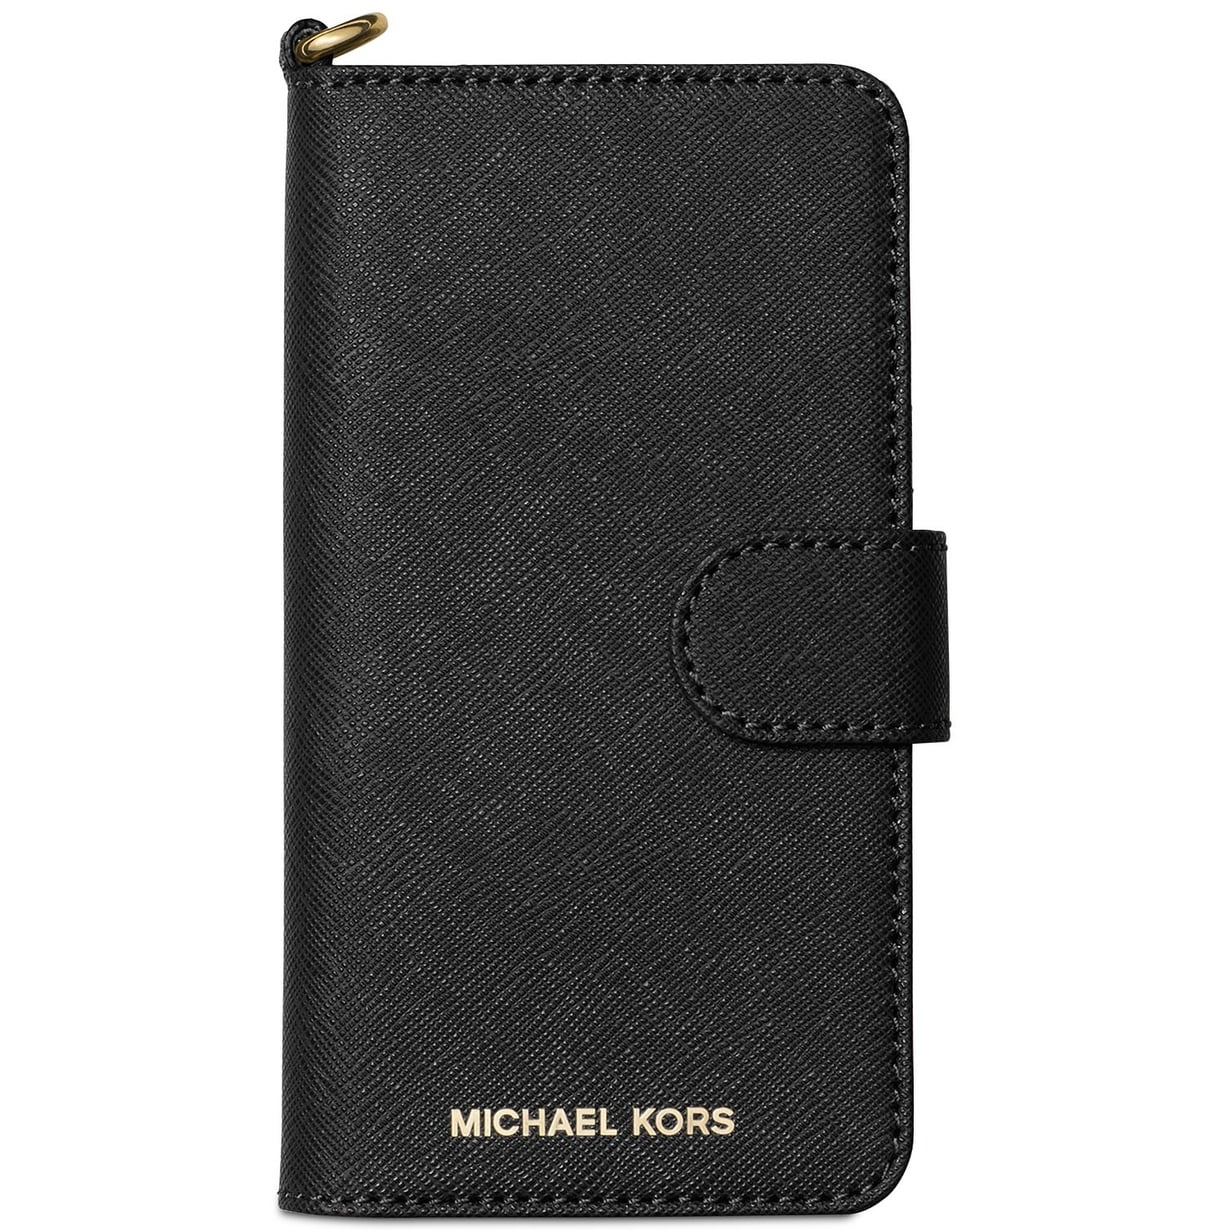 michael kors iphone 8 wallet